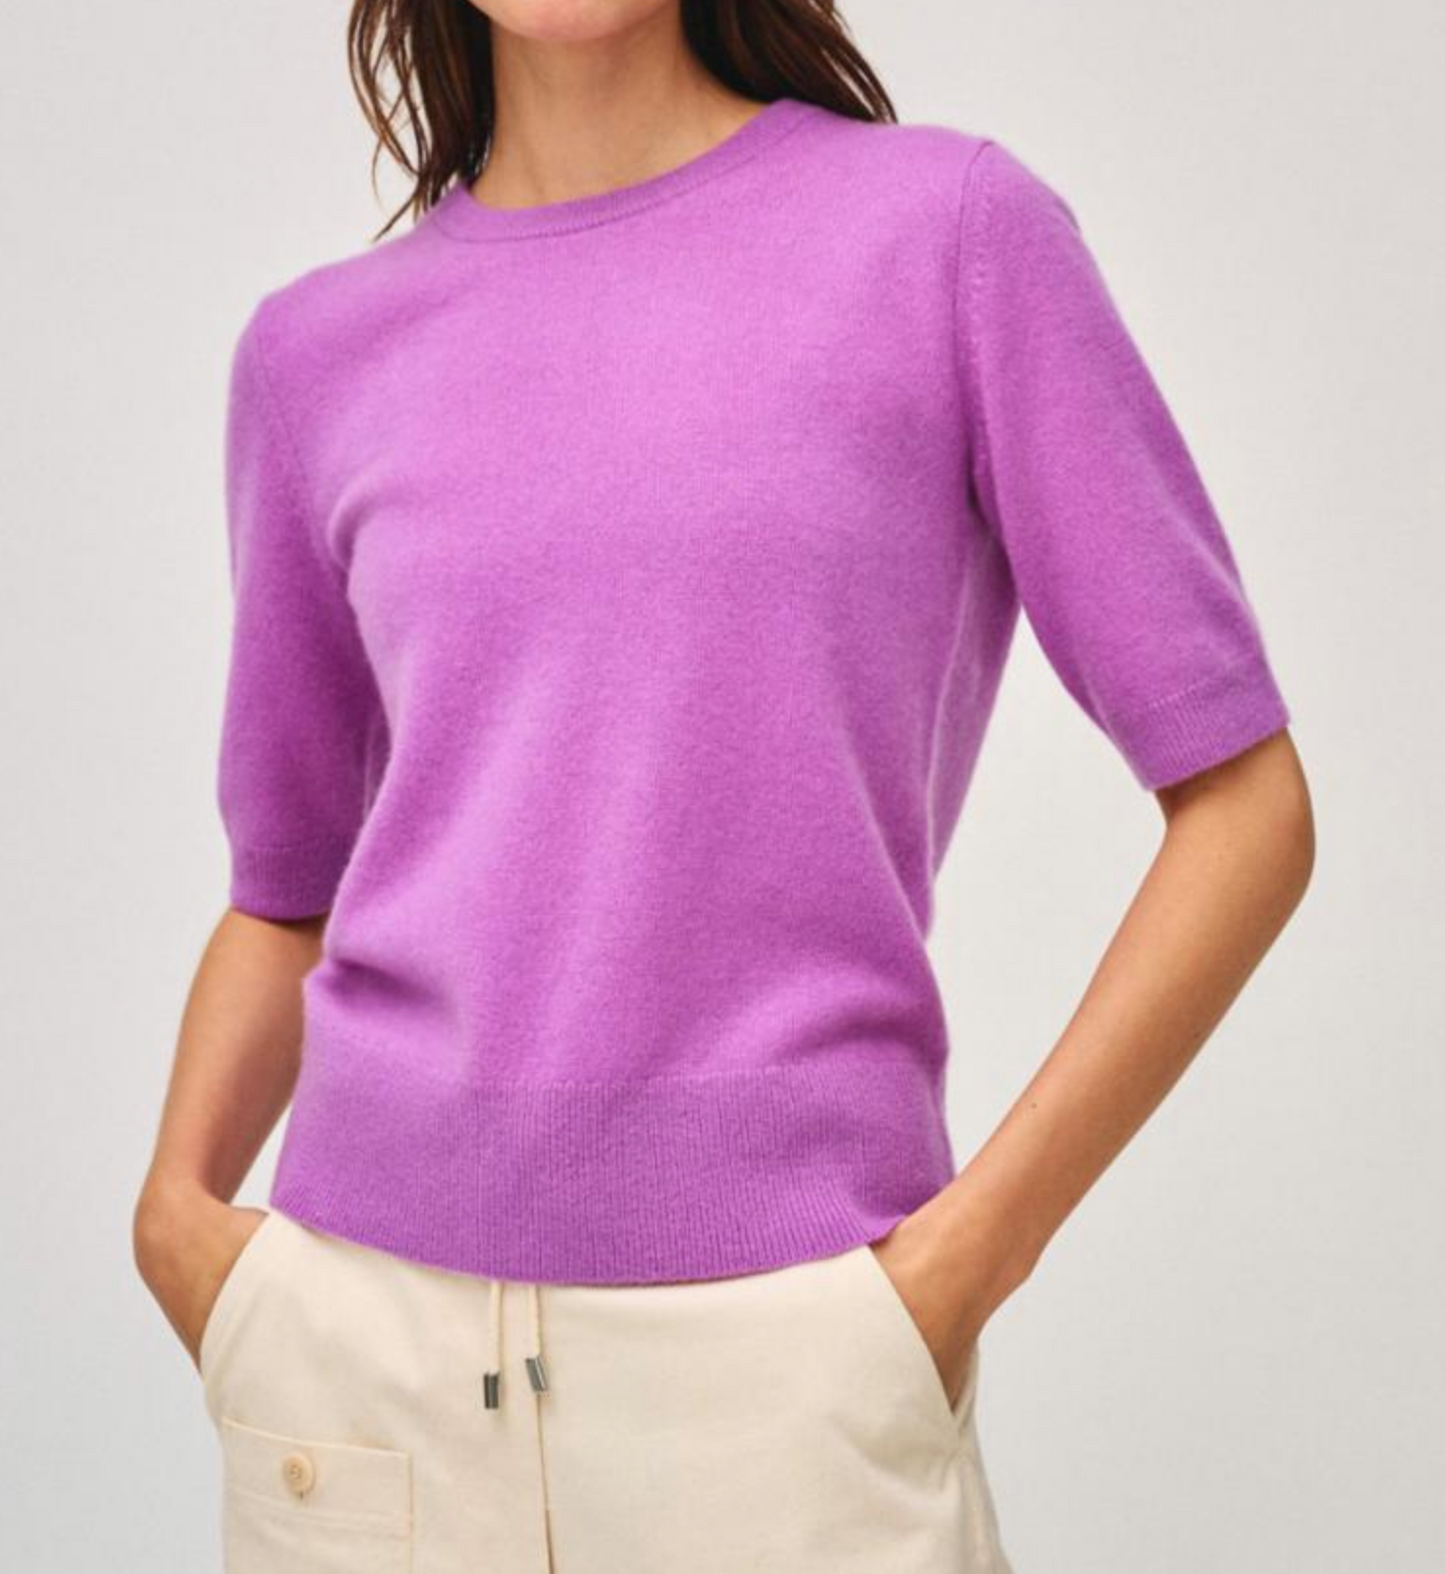 W+W Elbow Sleeve Sweater